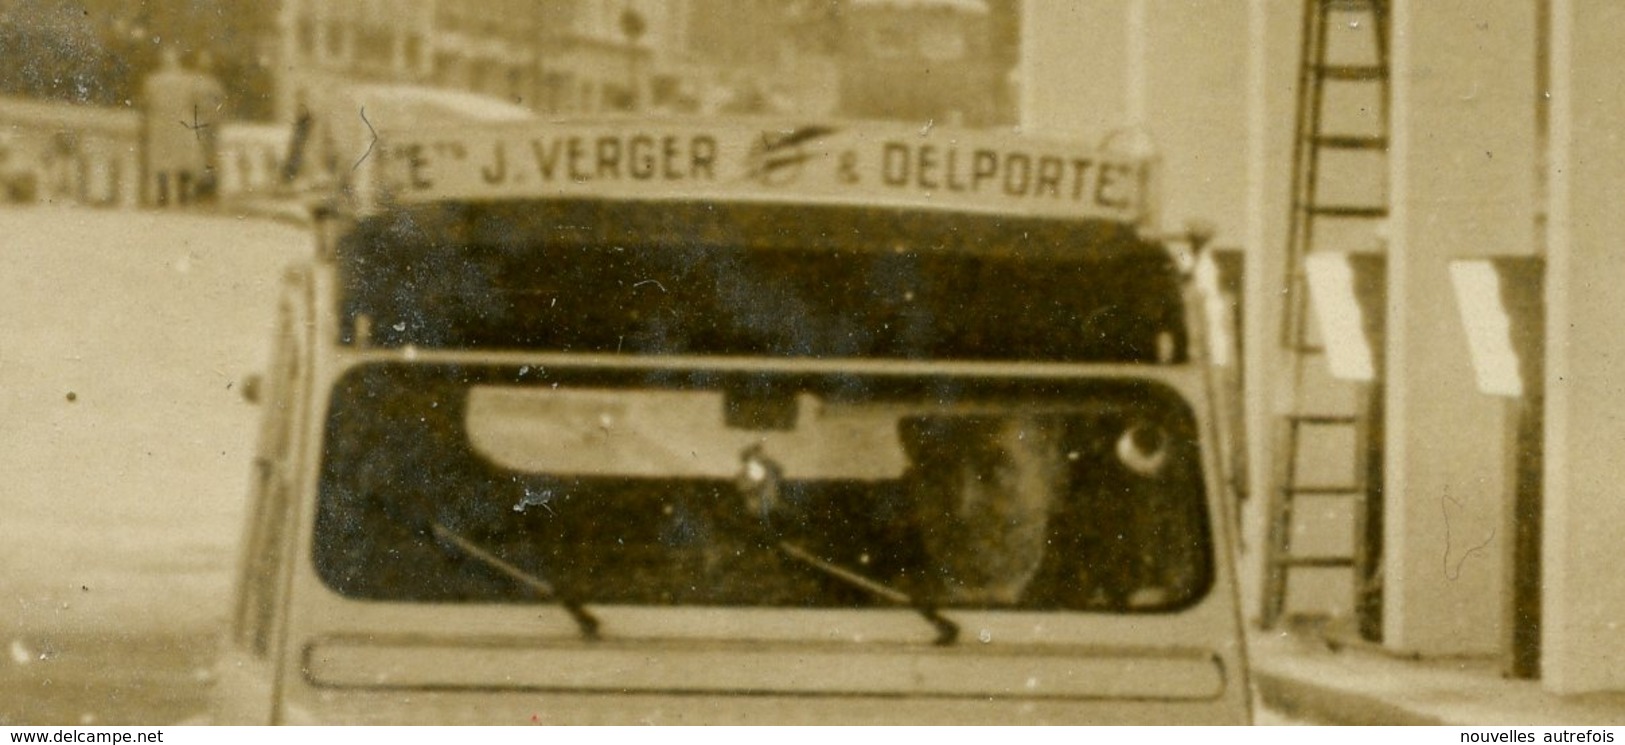 PHOTO AGIP R.COHEN - 2 CV CITROEN DE 1956 AVEC PUB " Ets J. VERGER " EMPRUNTANT  PASSAGE SOUTERRAIN DE L'ALMA 02/10/1956 - Automobile